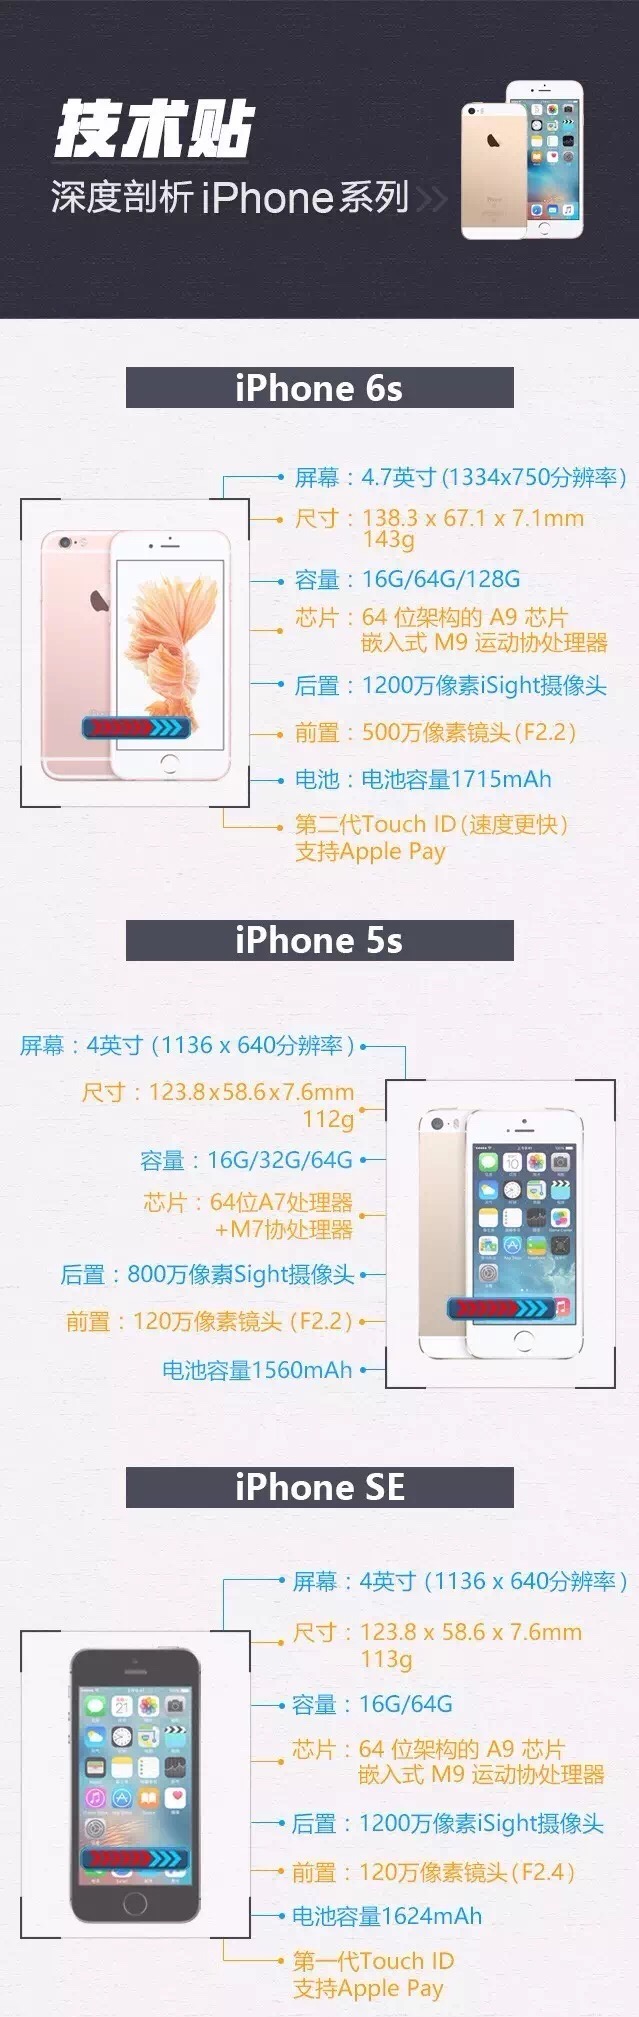 技术性贴：一张图深层分析iPhone每个系列产品主要参数。秒变果粉！